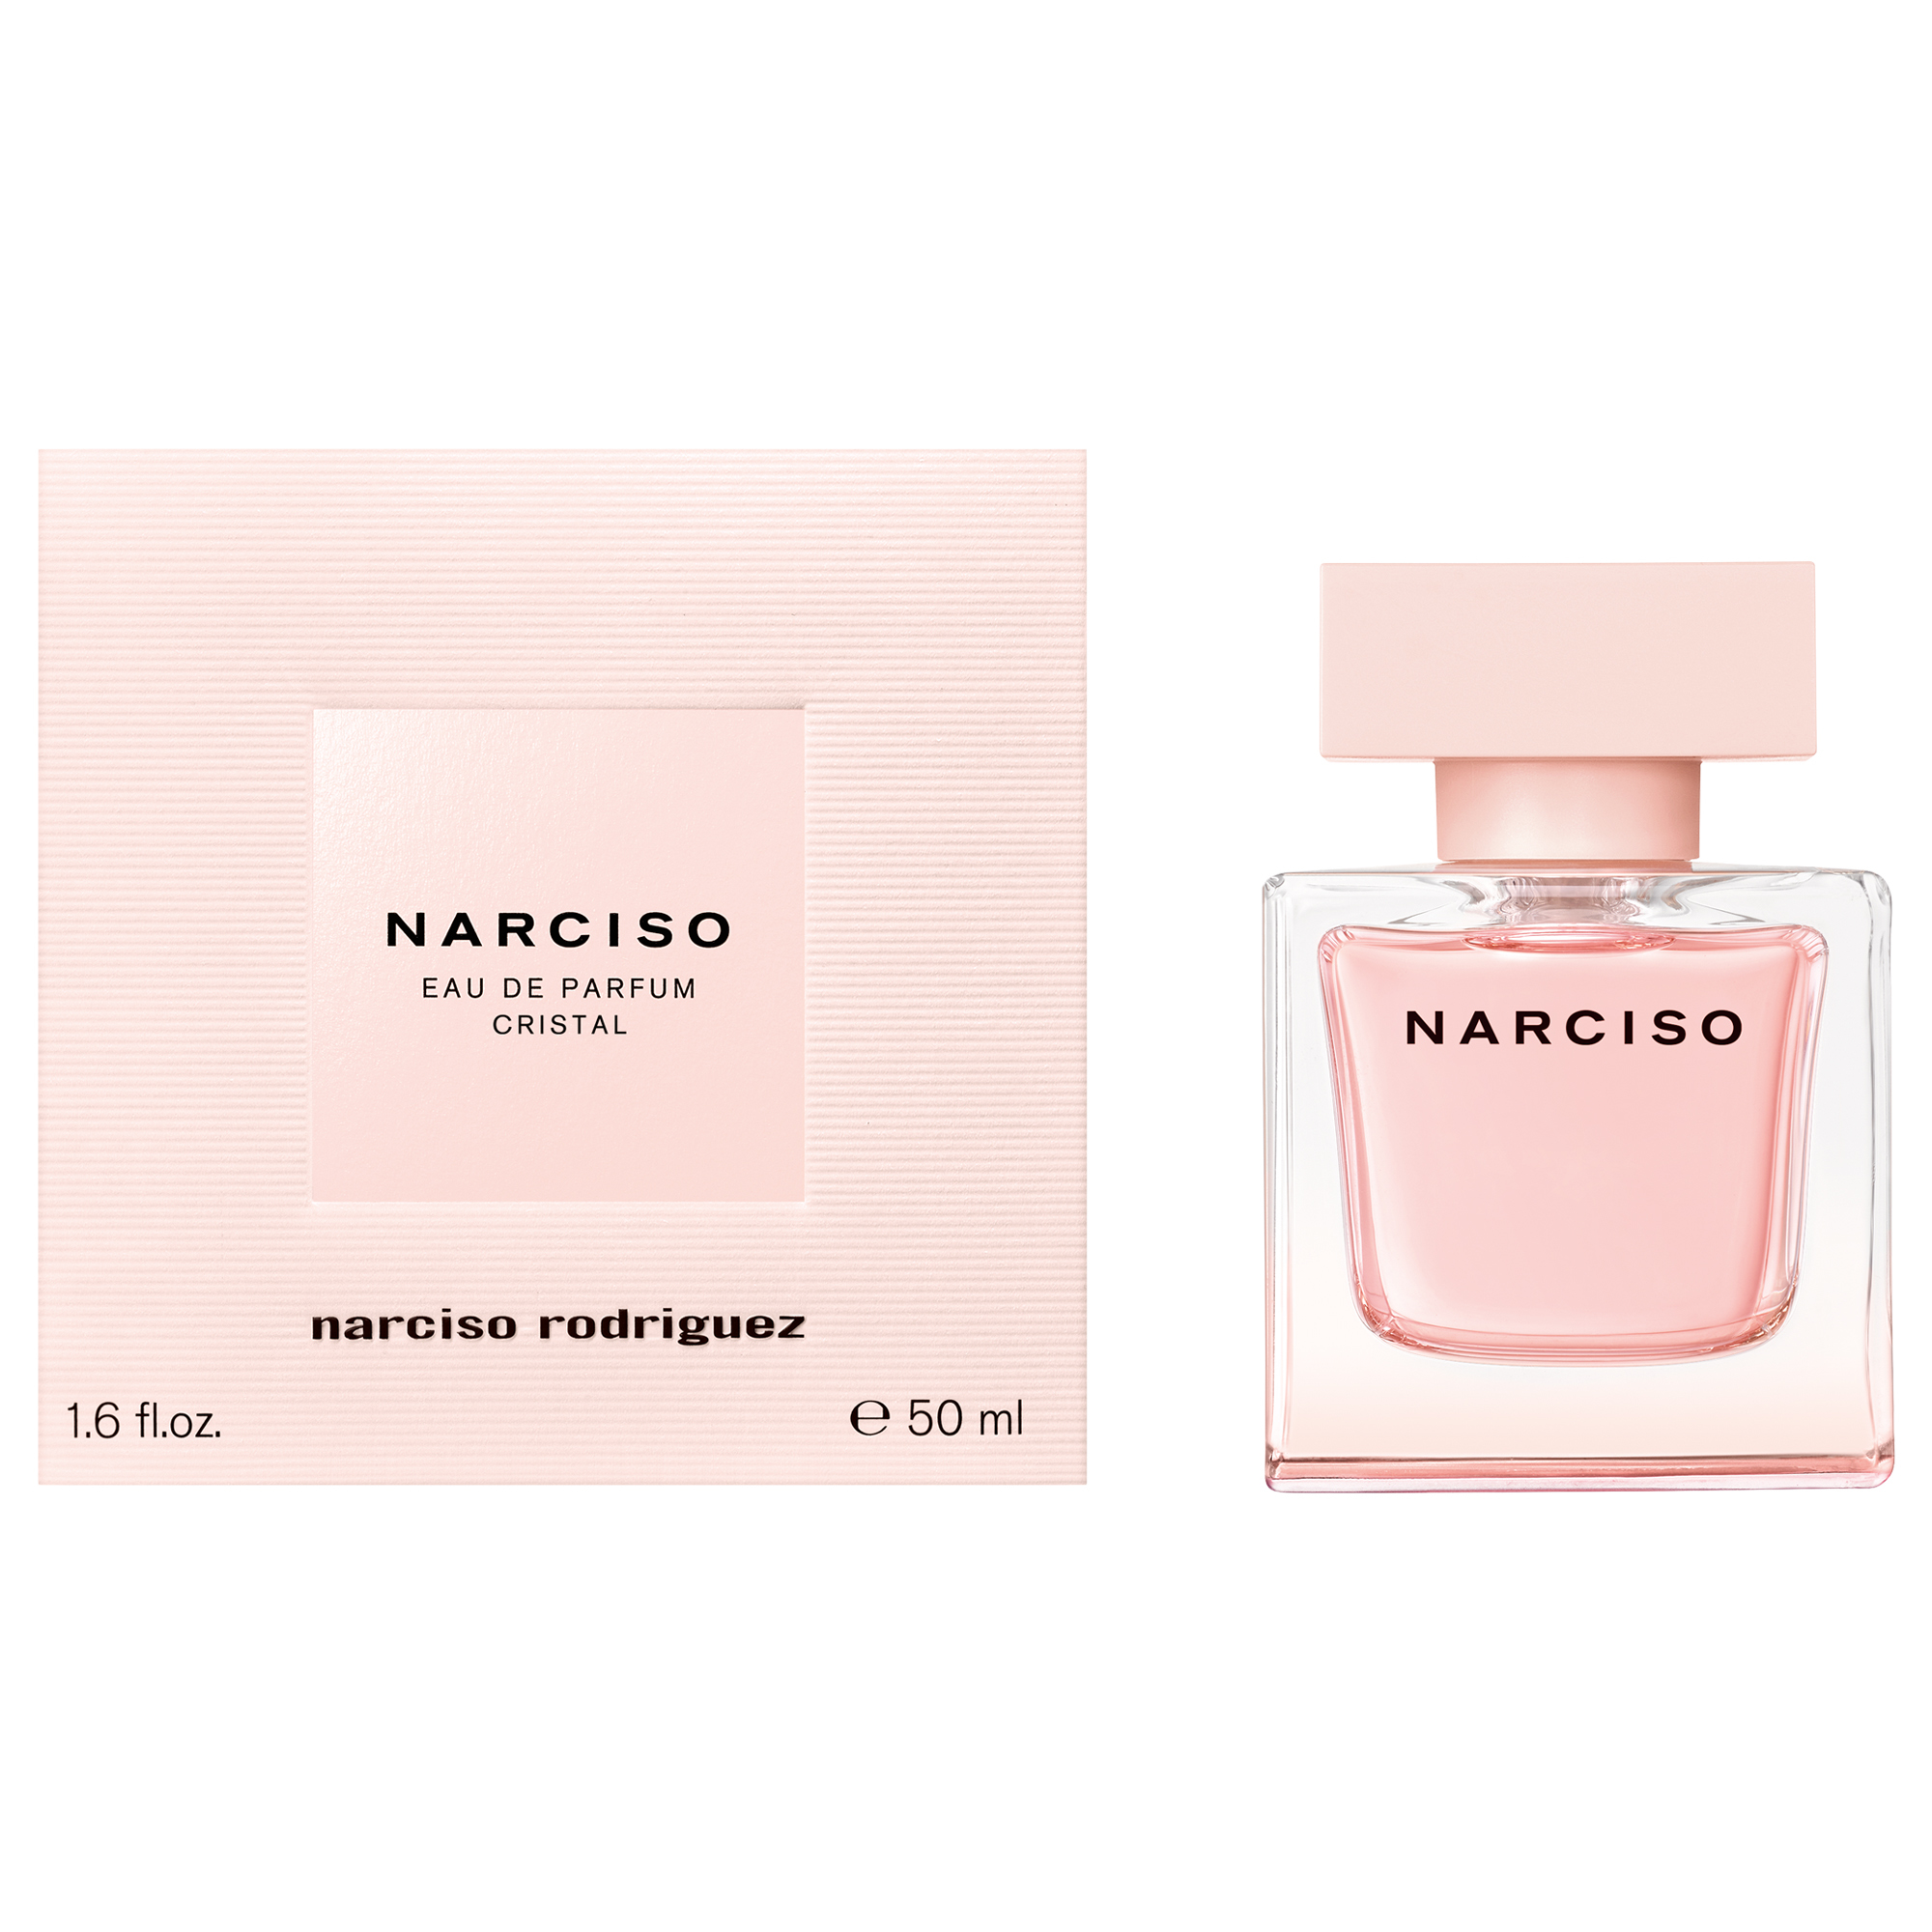 Narciso Cristal - Narciso Rodriguez - 50 ml - edp